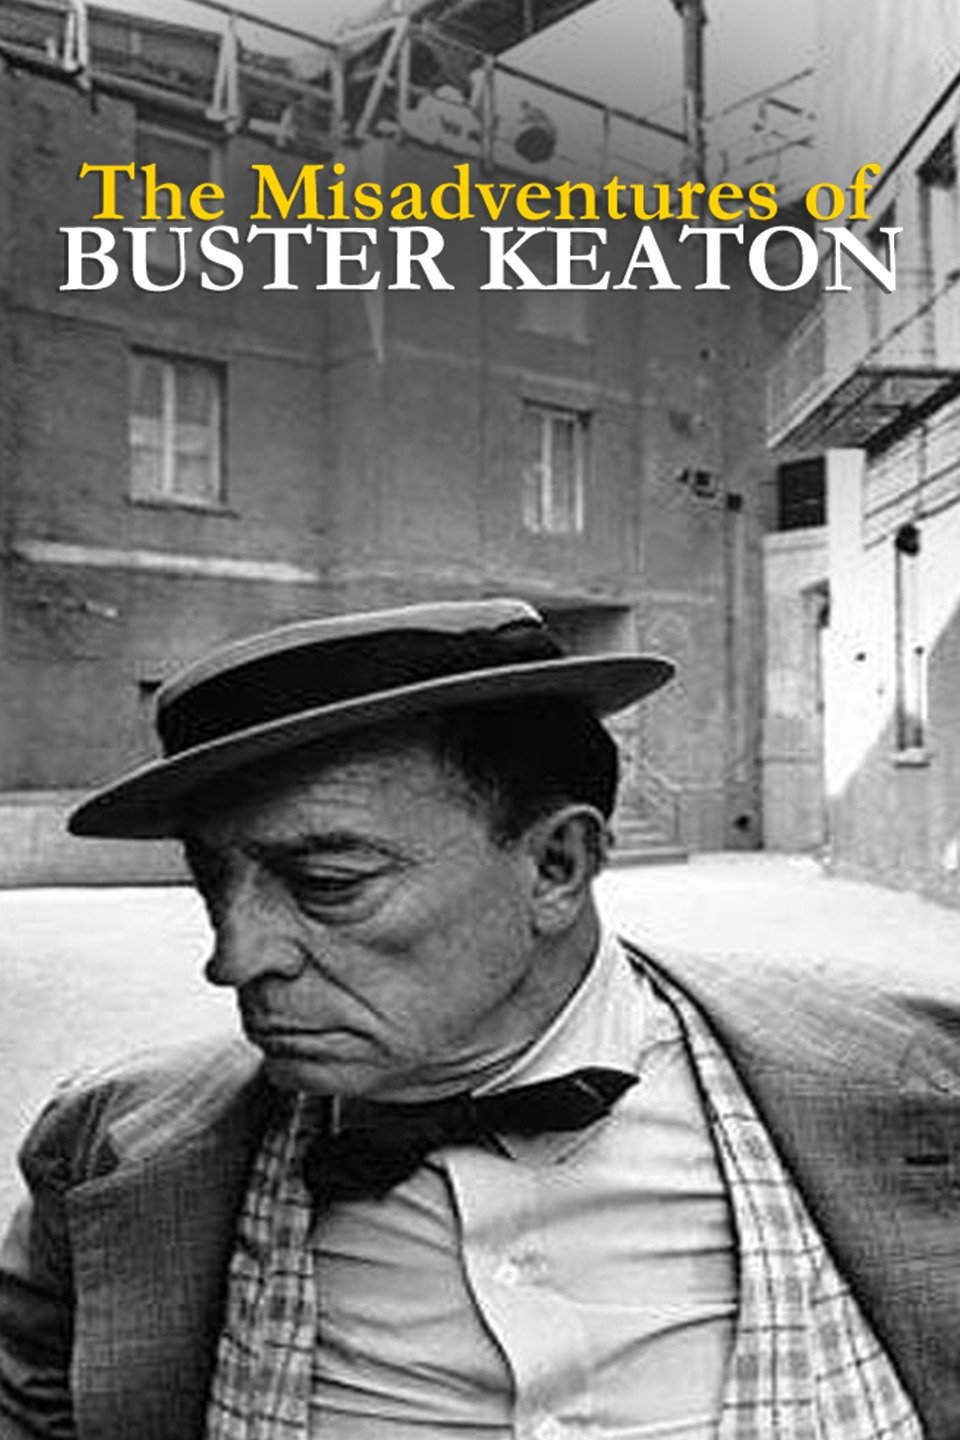 buster keaton movies amazon